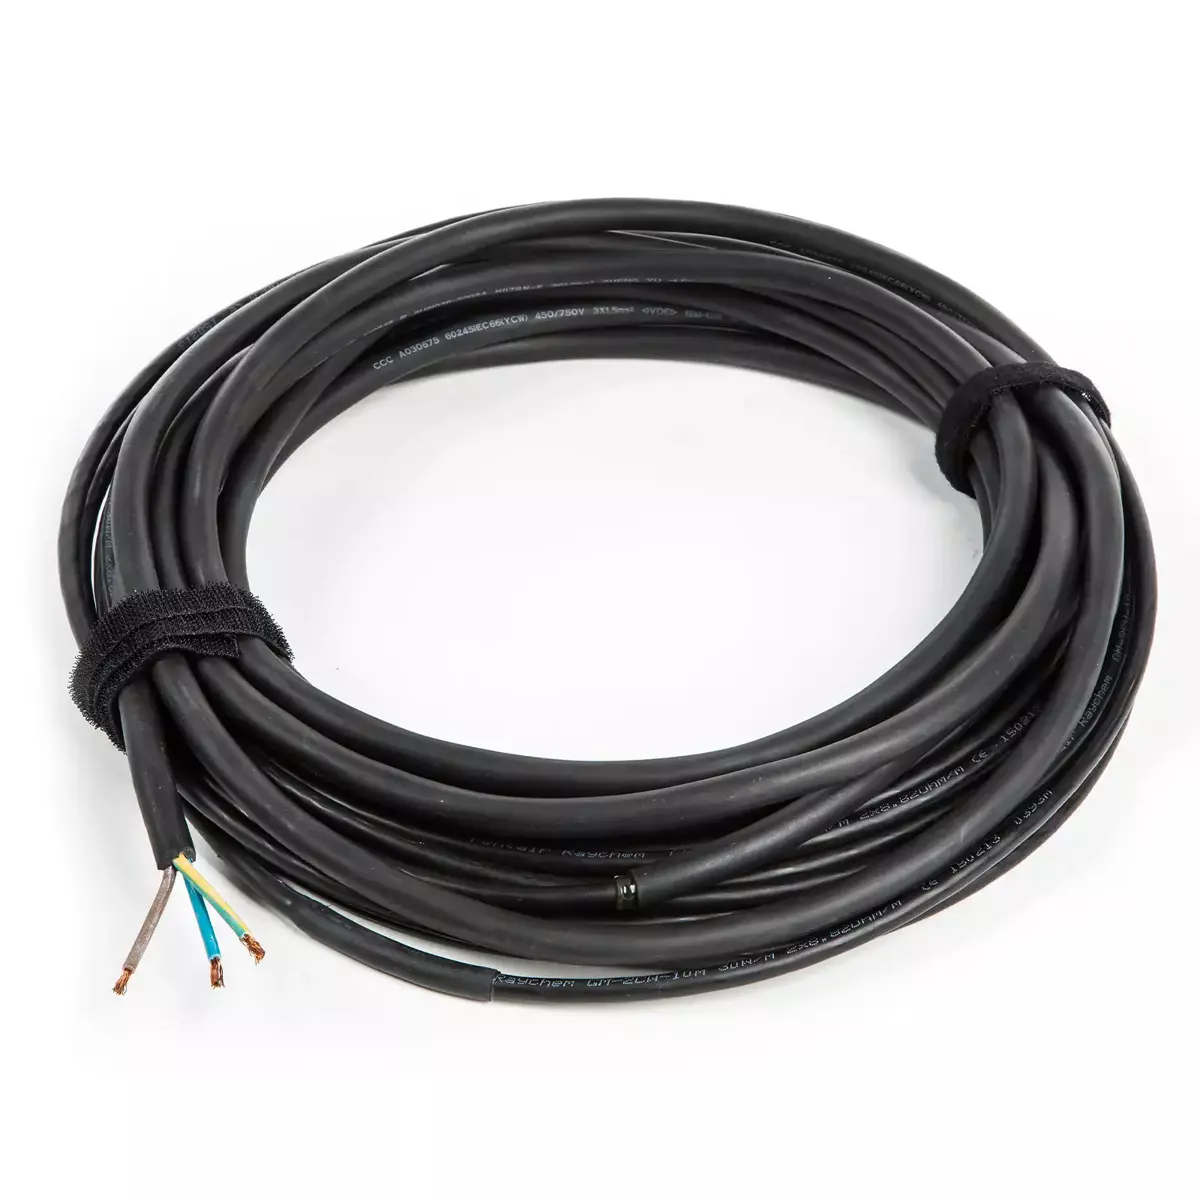 nVent RAYCHEM GM-2CW-20M kabel grzewczy do rynien 600 W